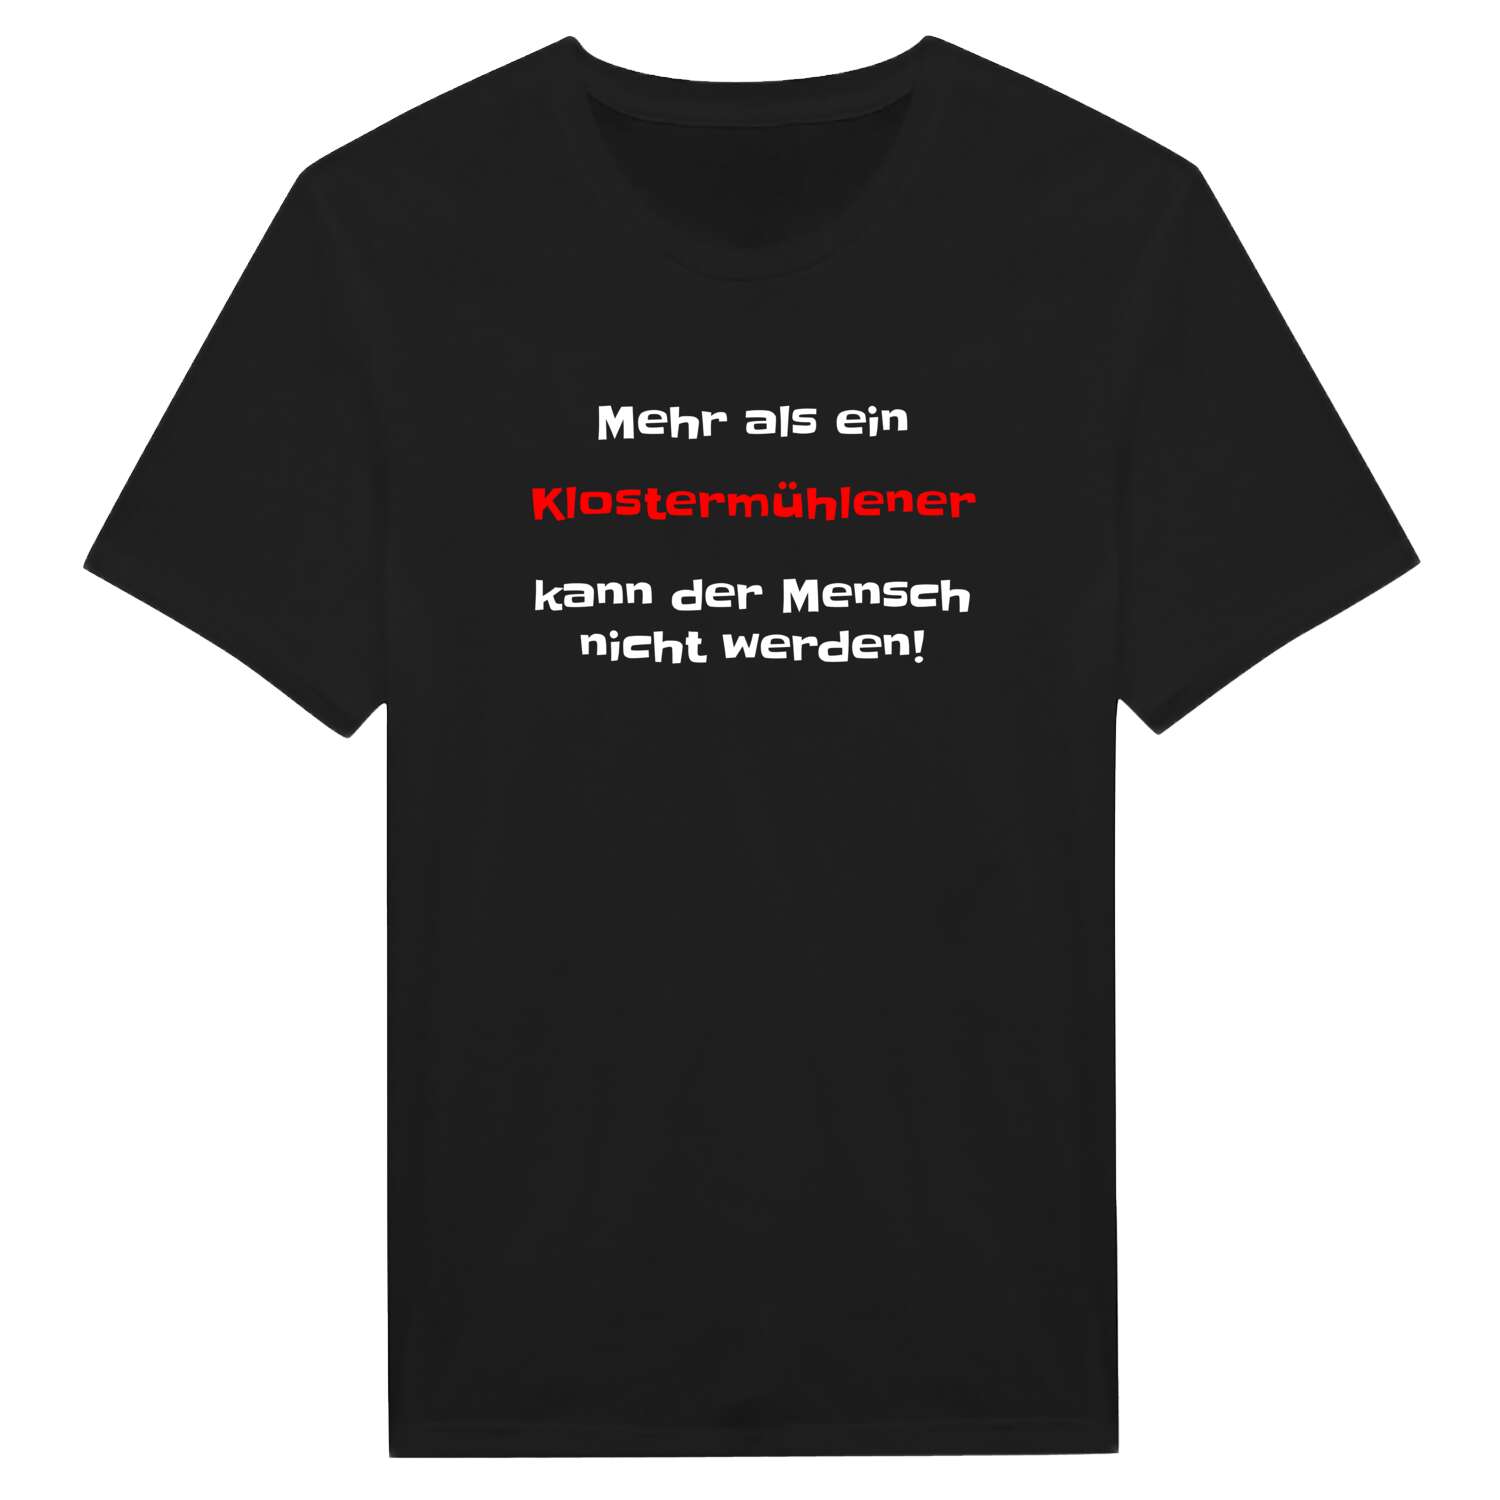 Klostermühle T-Shirt »Mehr als ein«